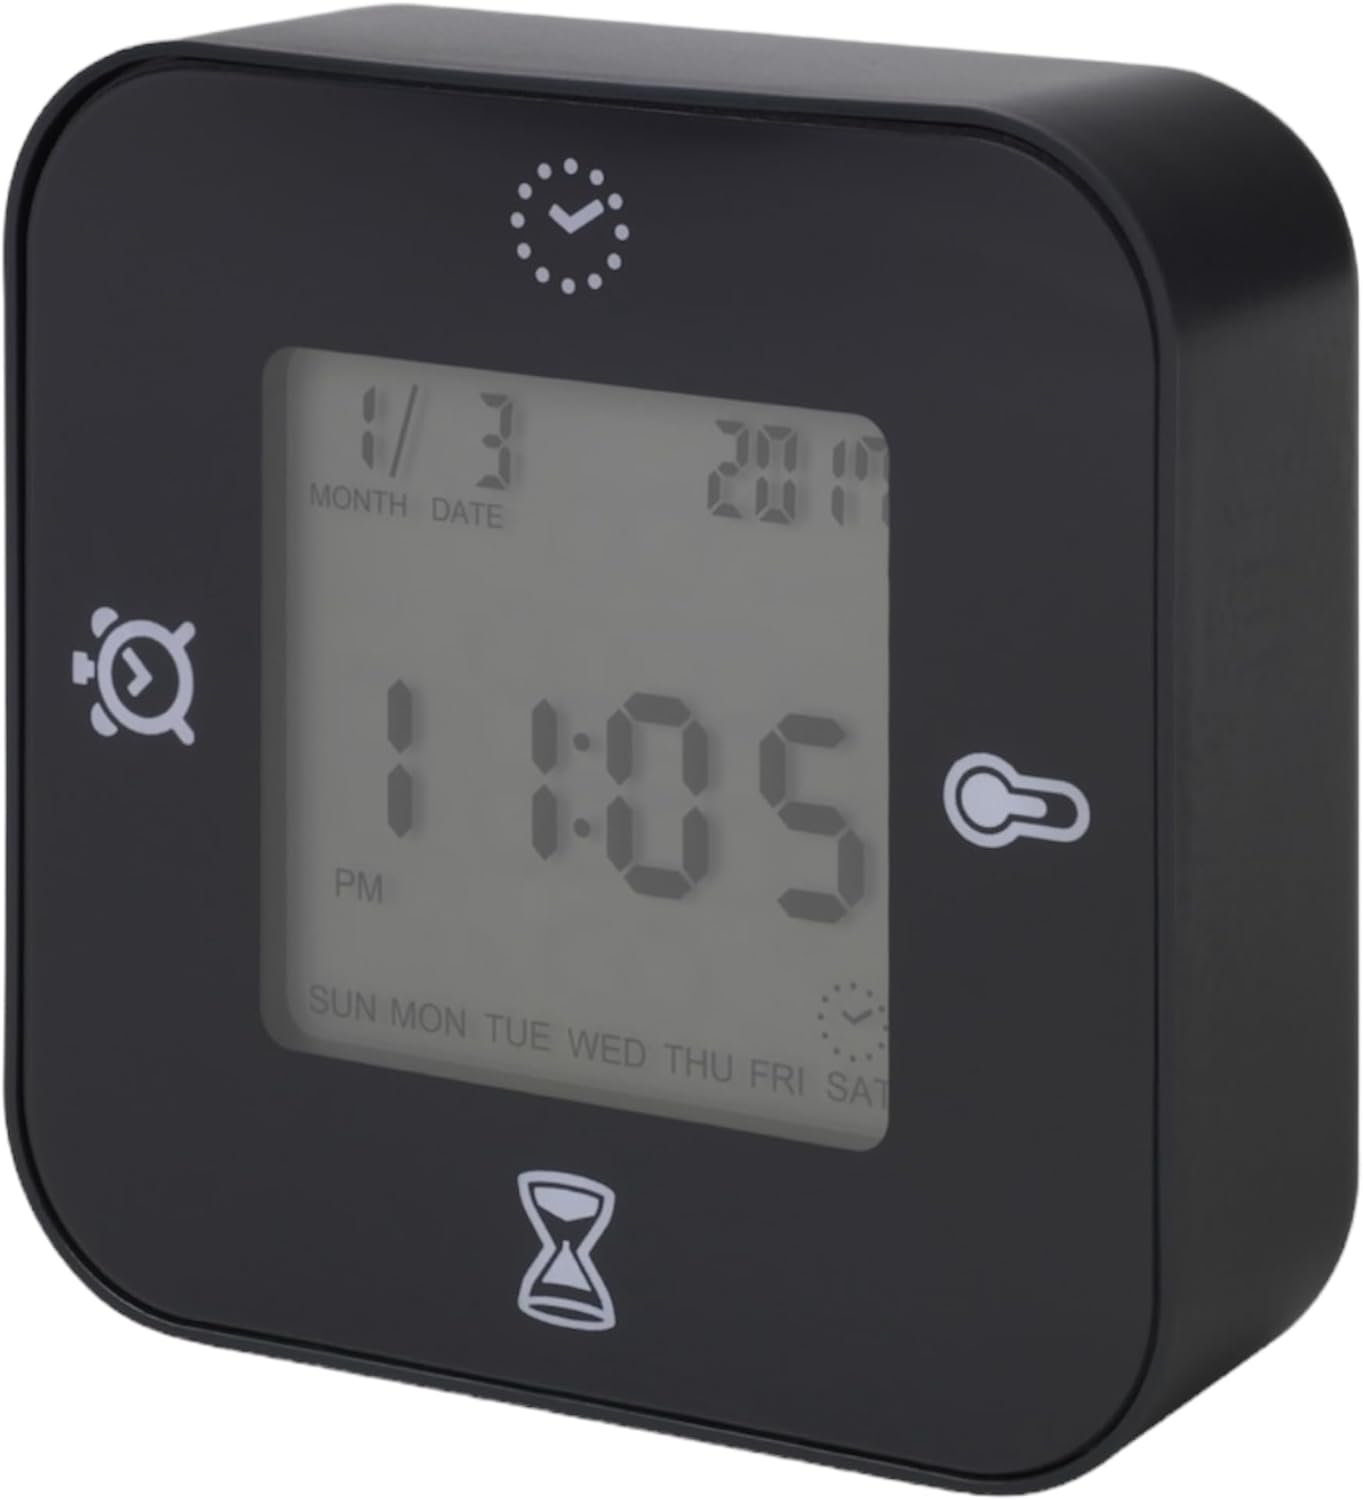 イケア クロッキス 時計 温度計 デジタルクロックインテリア雑貨リビング ブラック